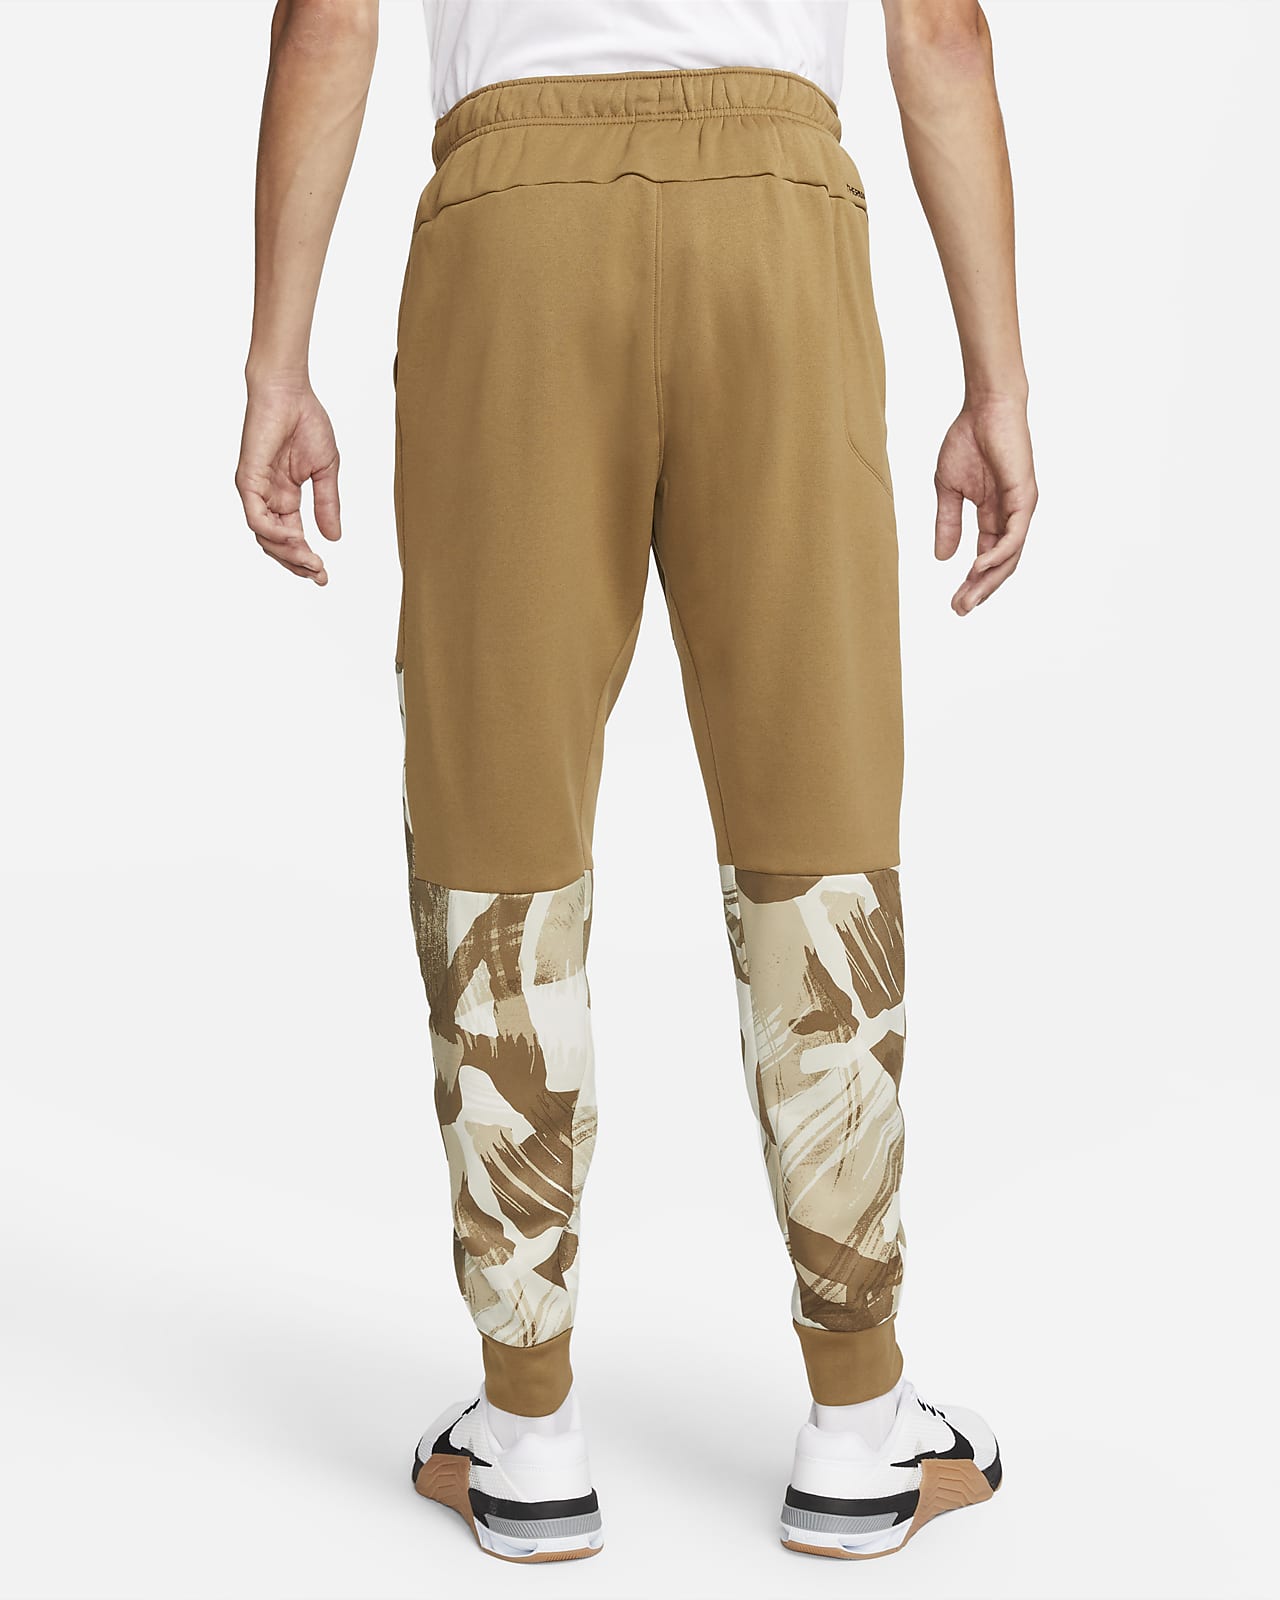 nike military pants